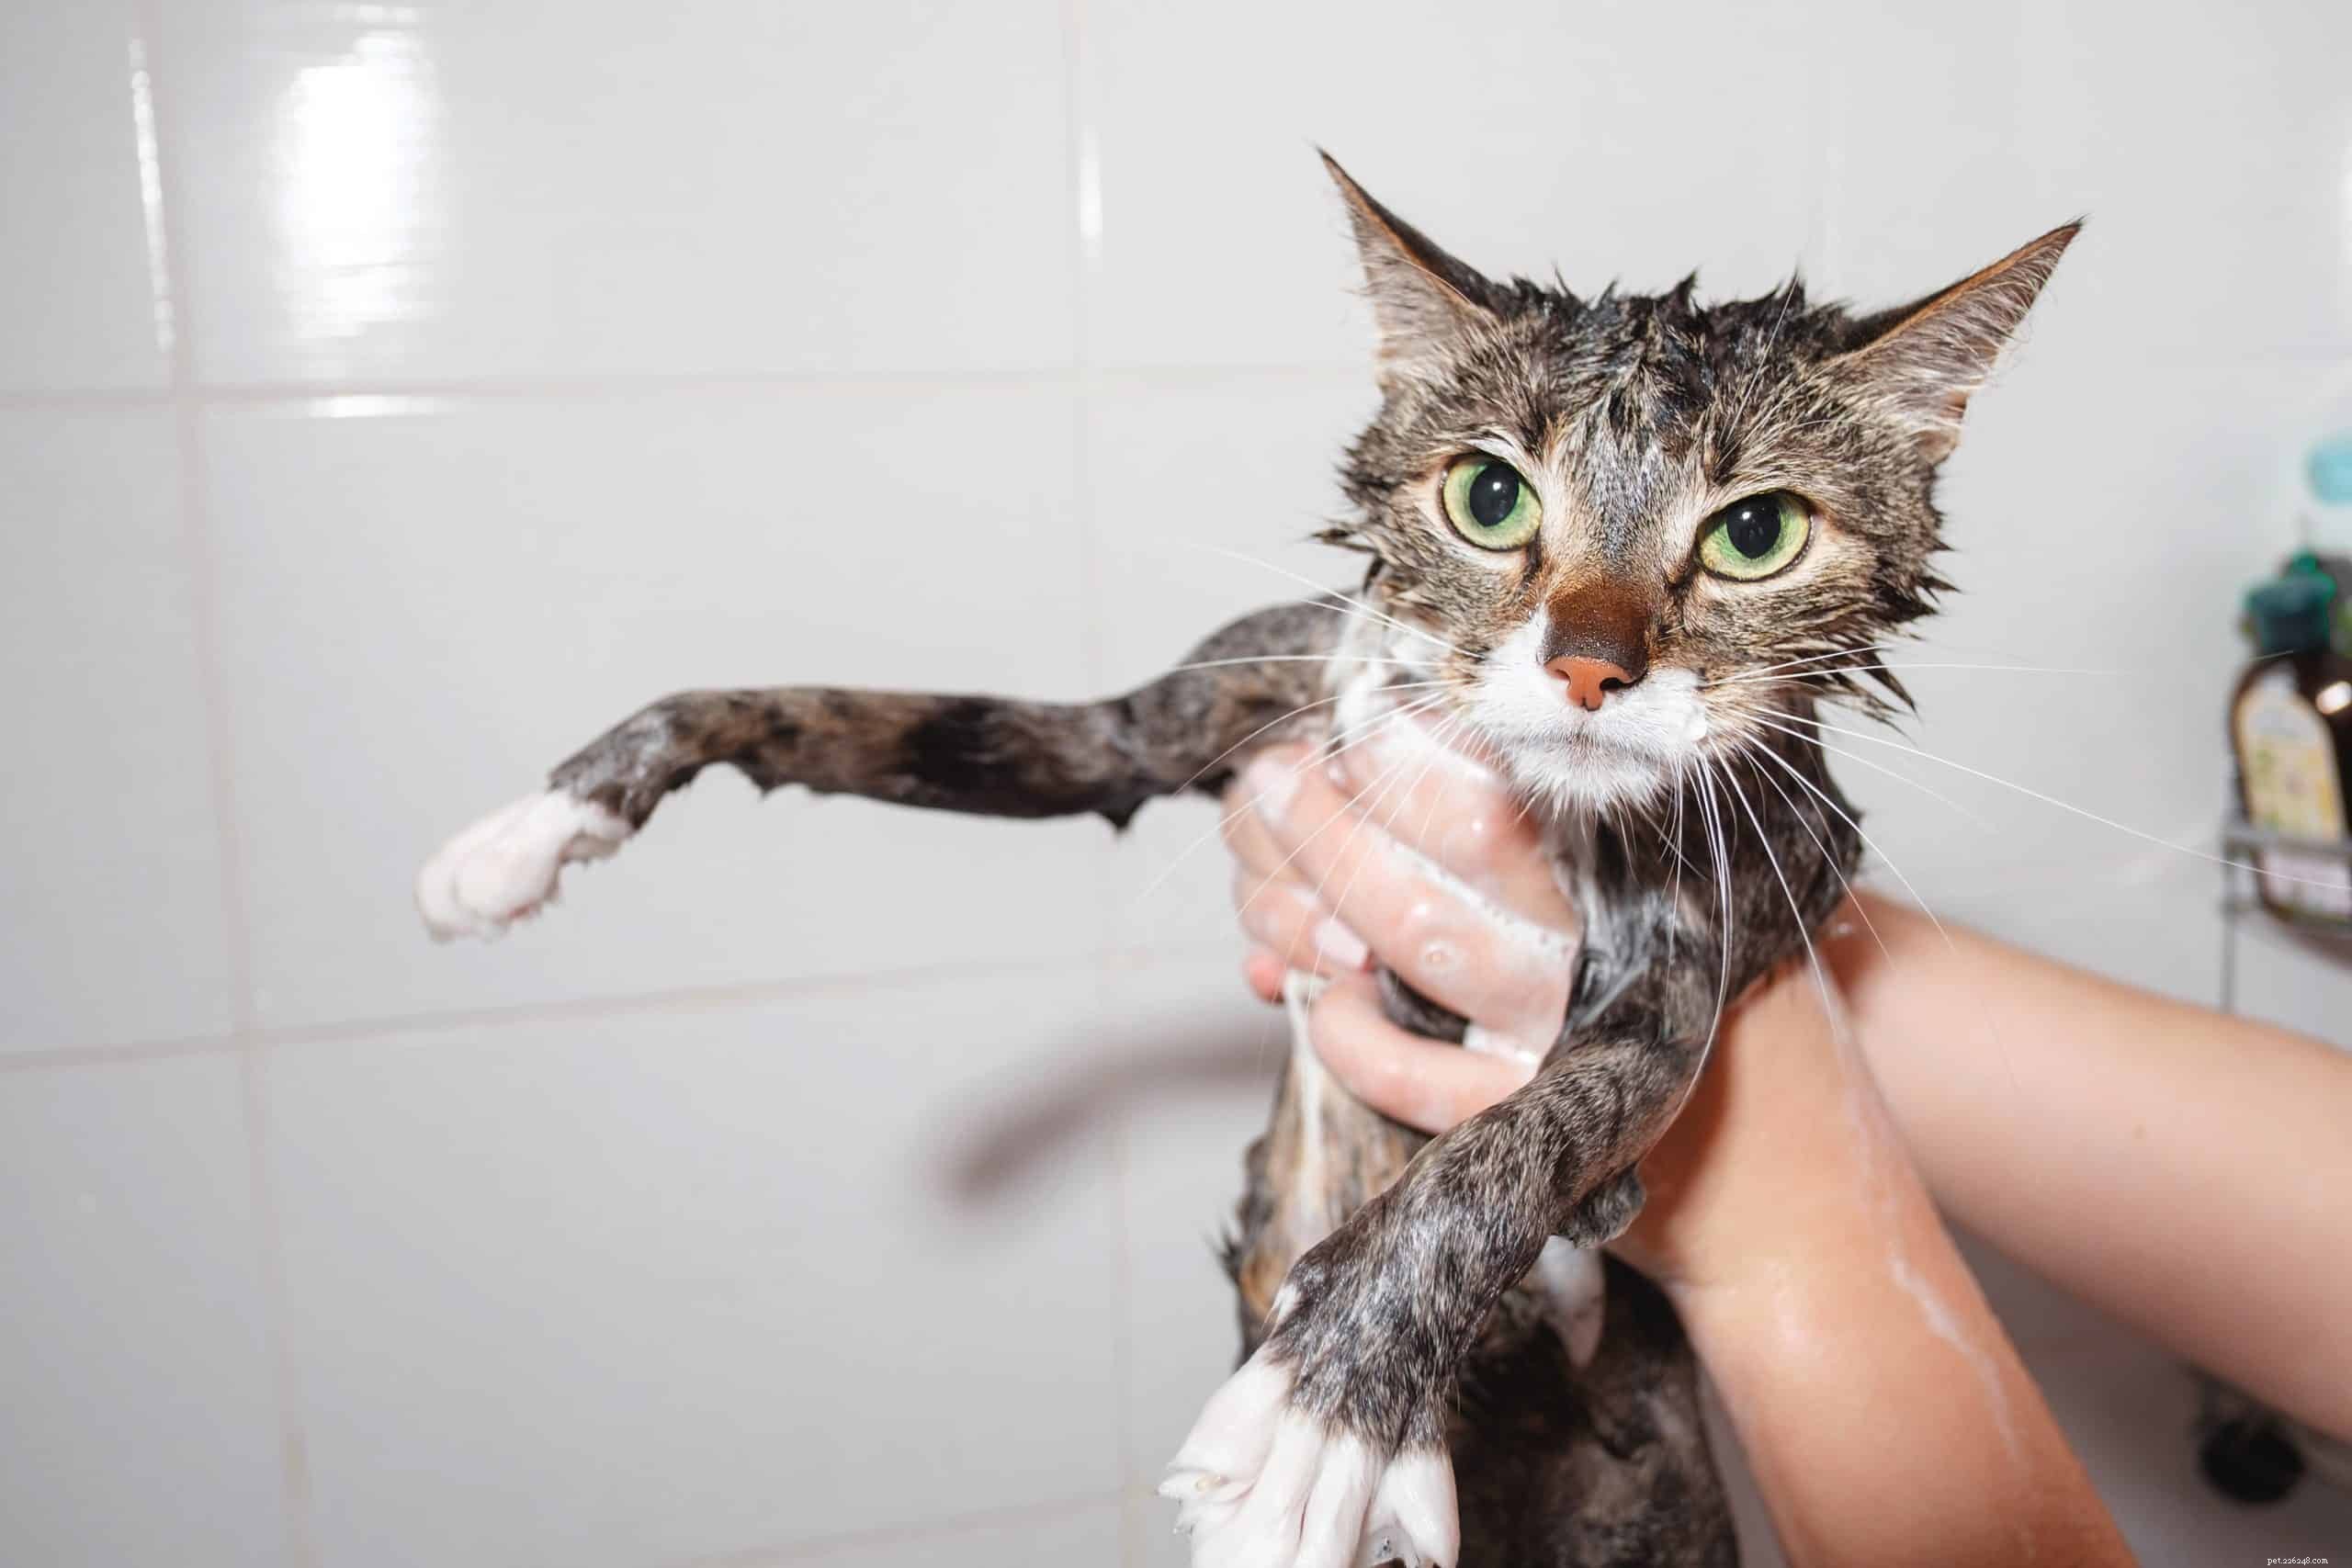 Por que a maioria dos gatos odeia água?